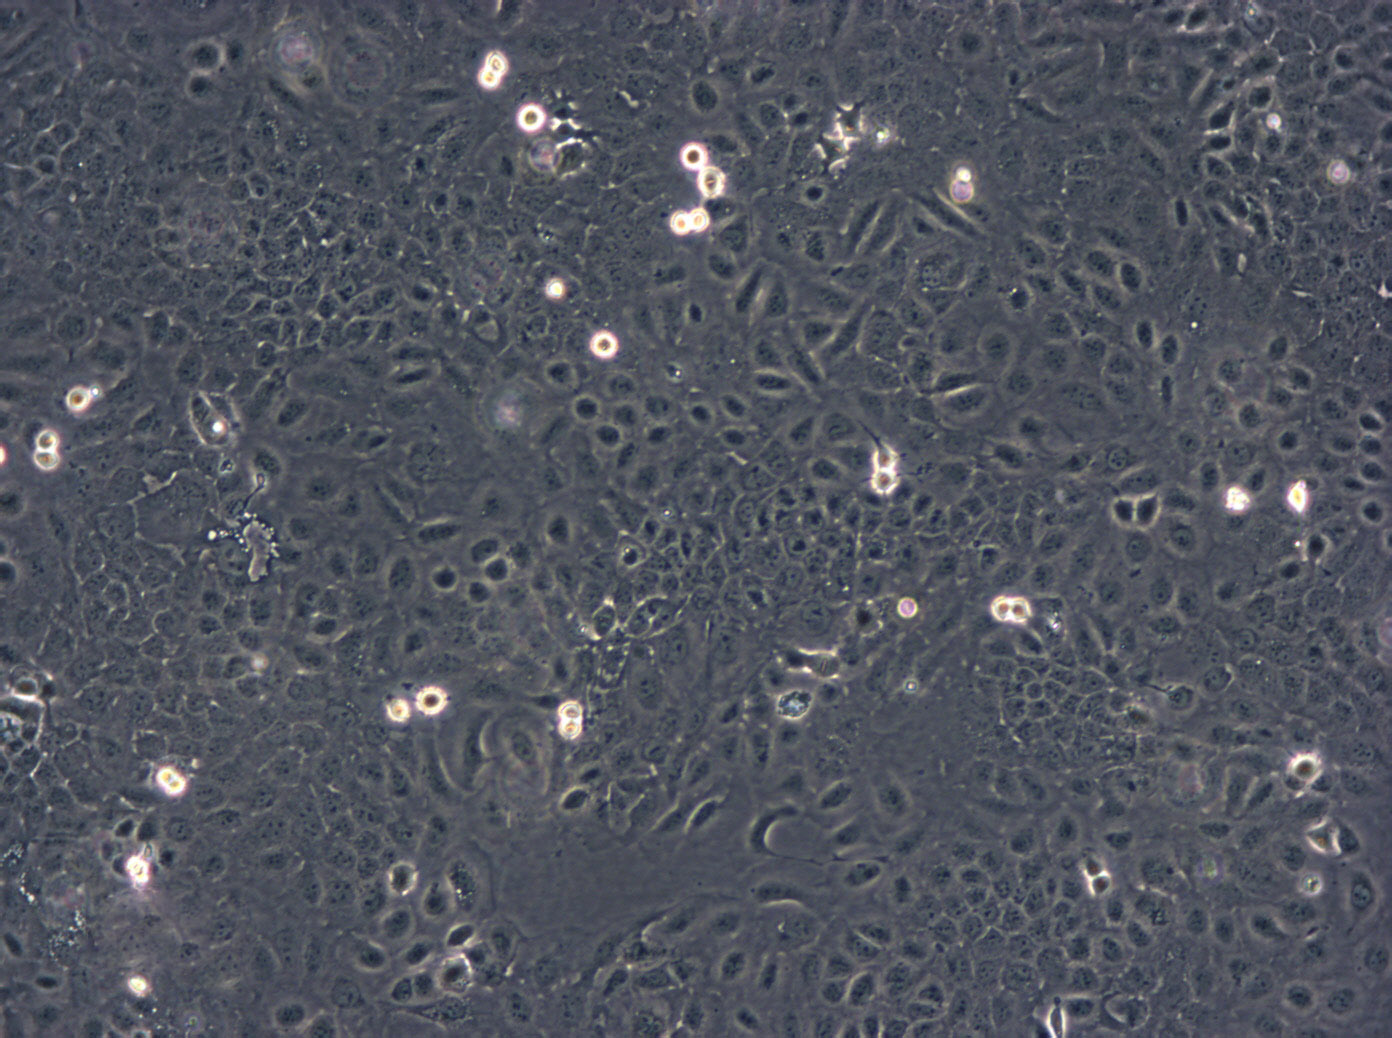 SNU-601 Cells|人胃癌可传代细胞系